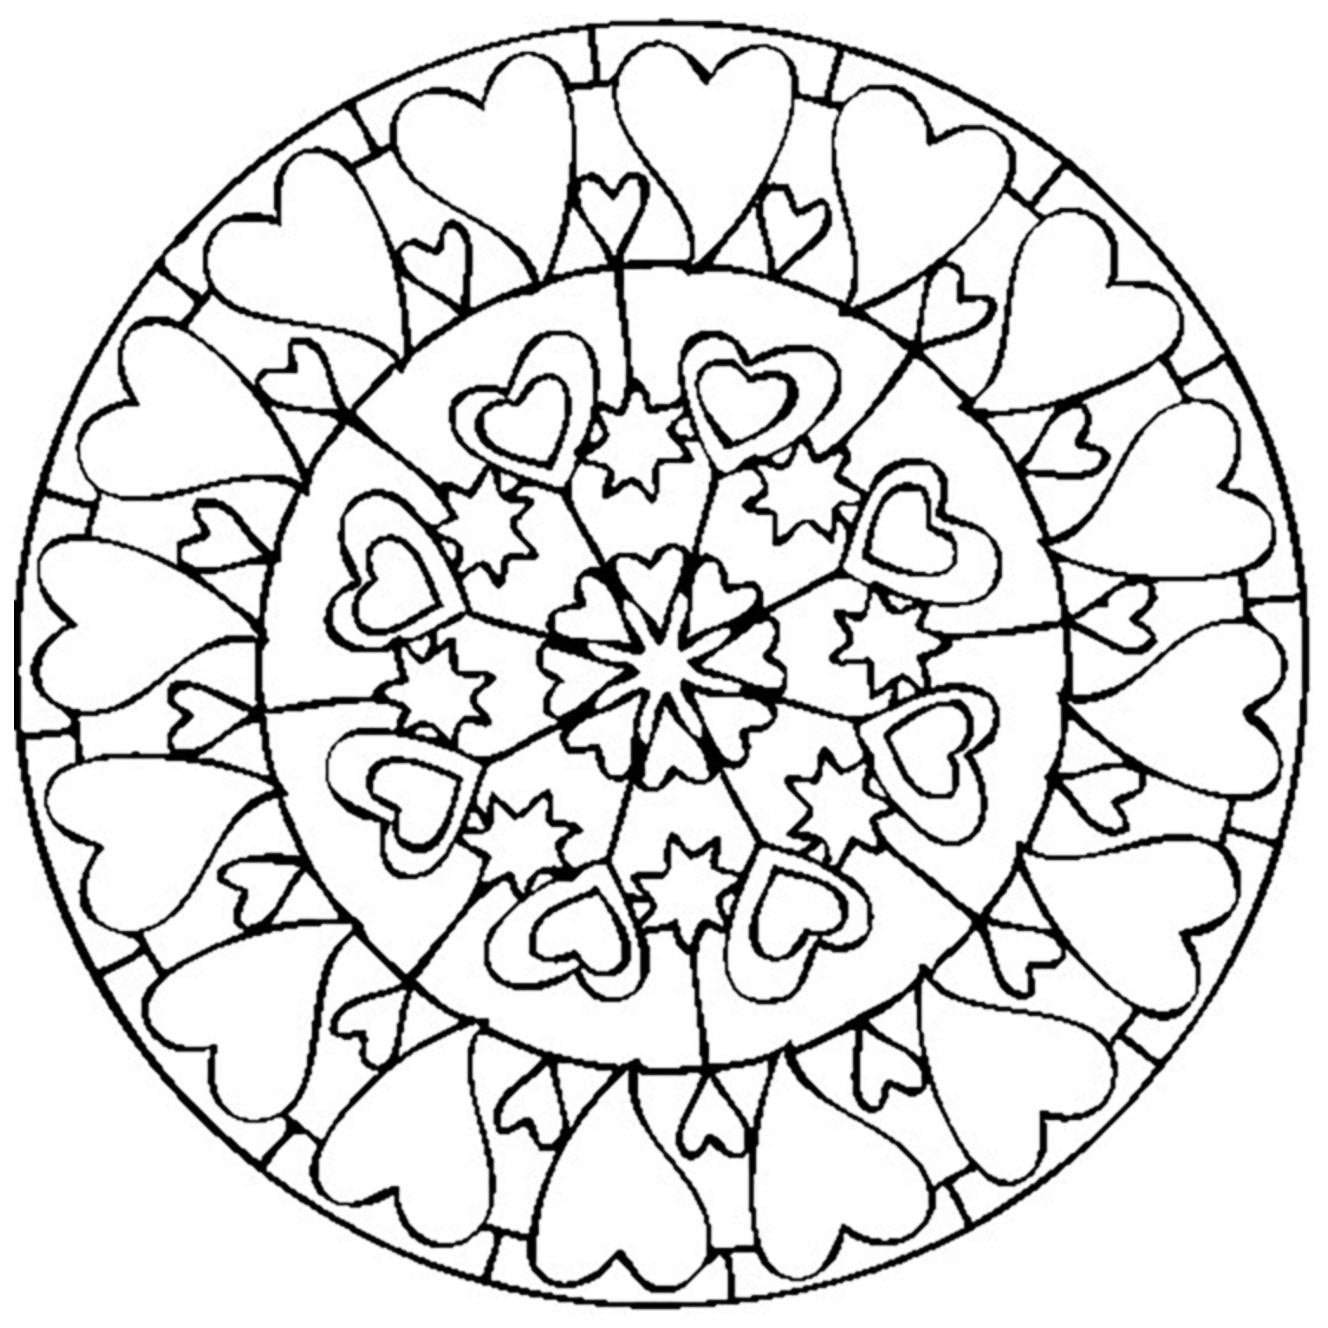 Mandala speciale di San Valentino disegnato a mano con cuori di varie dimensioni.